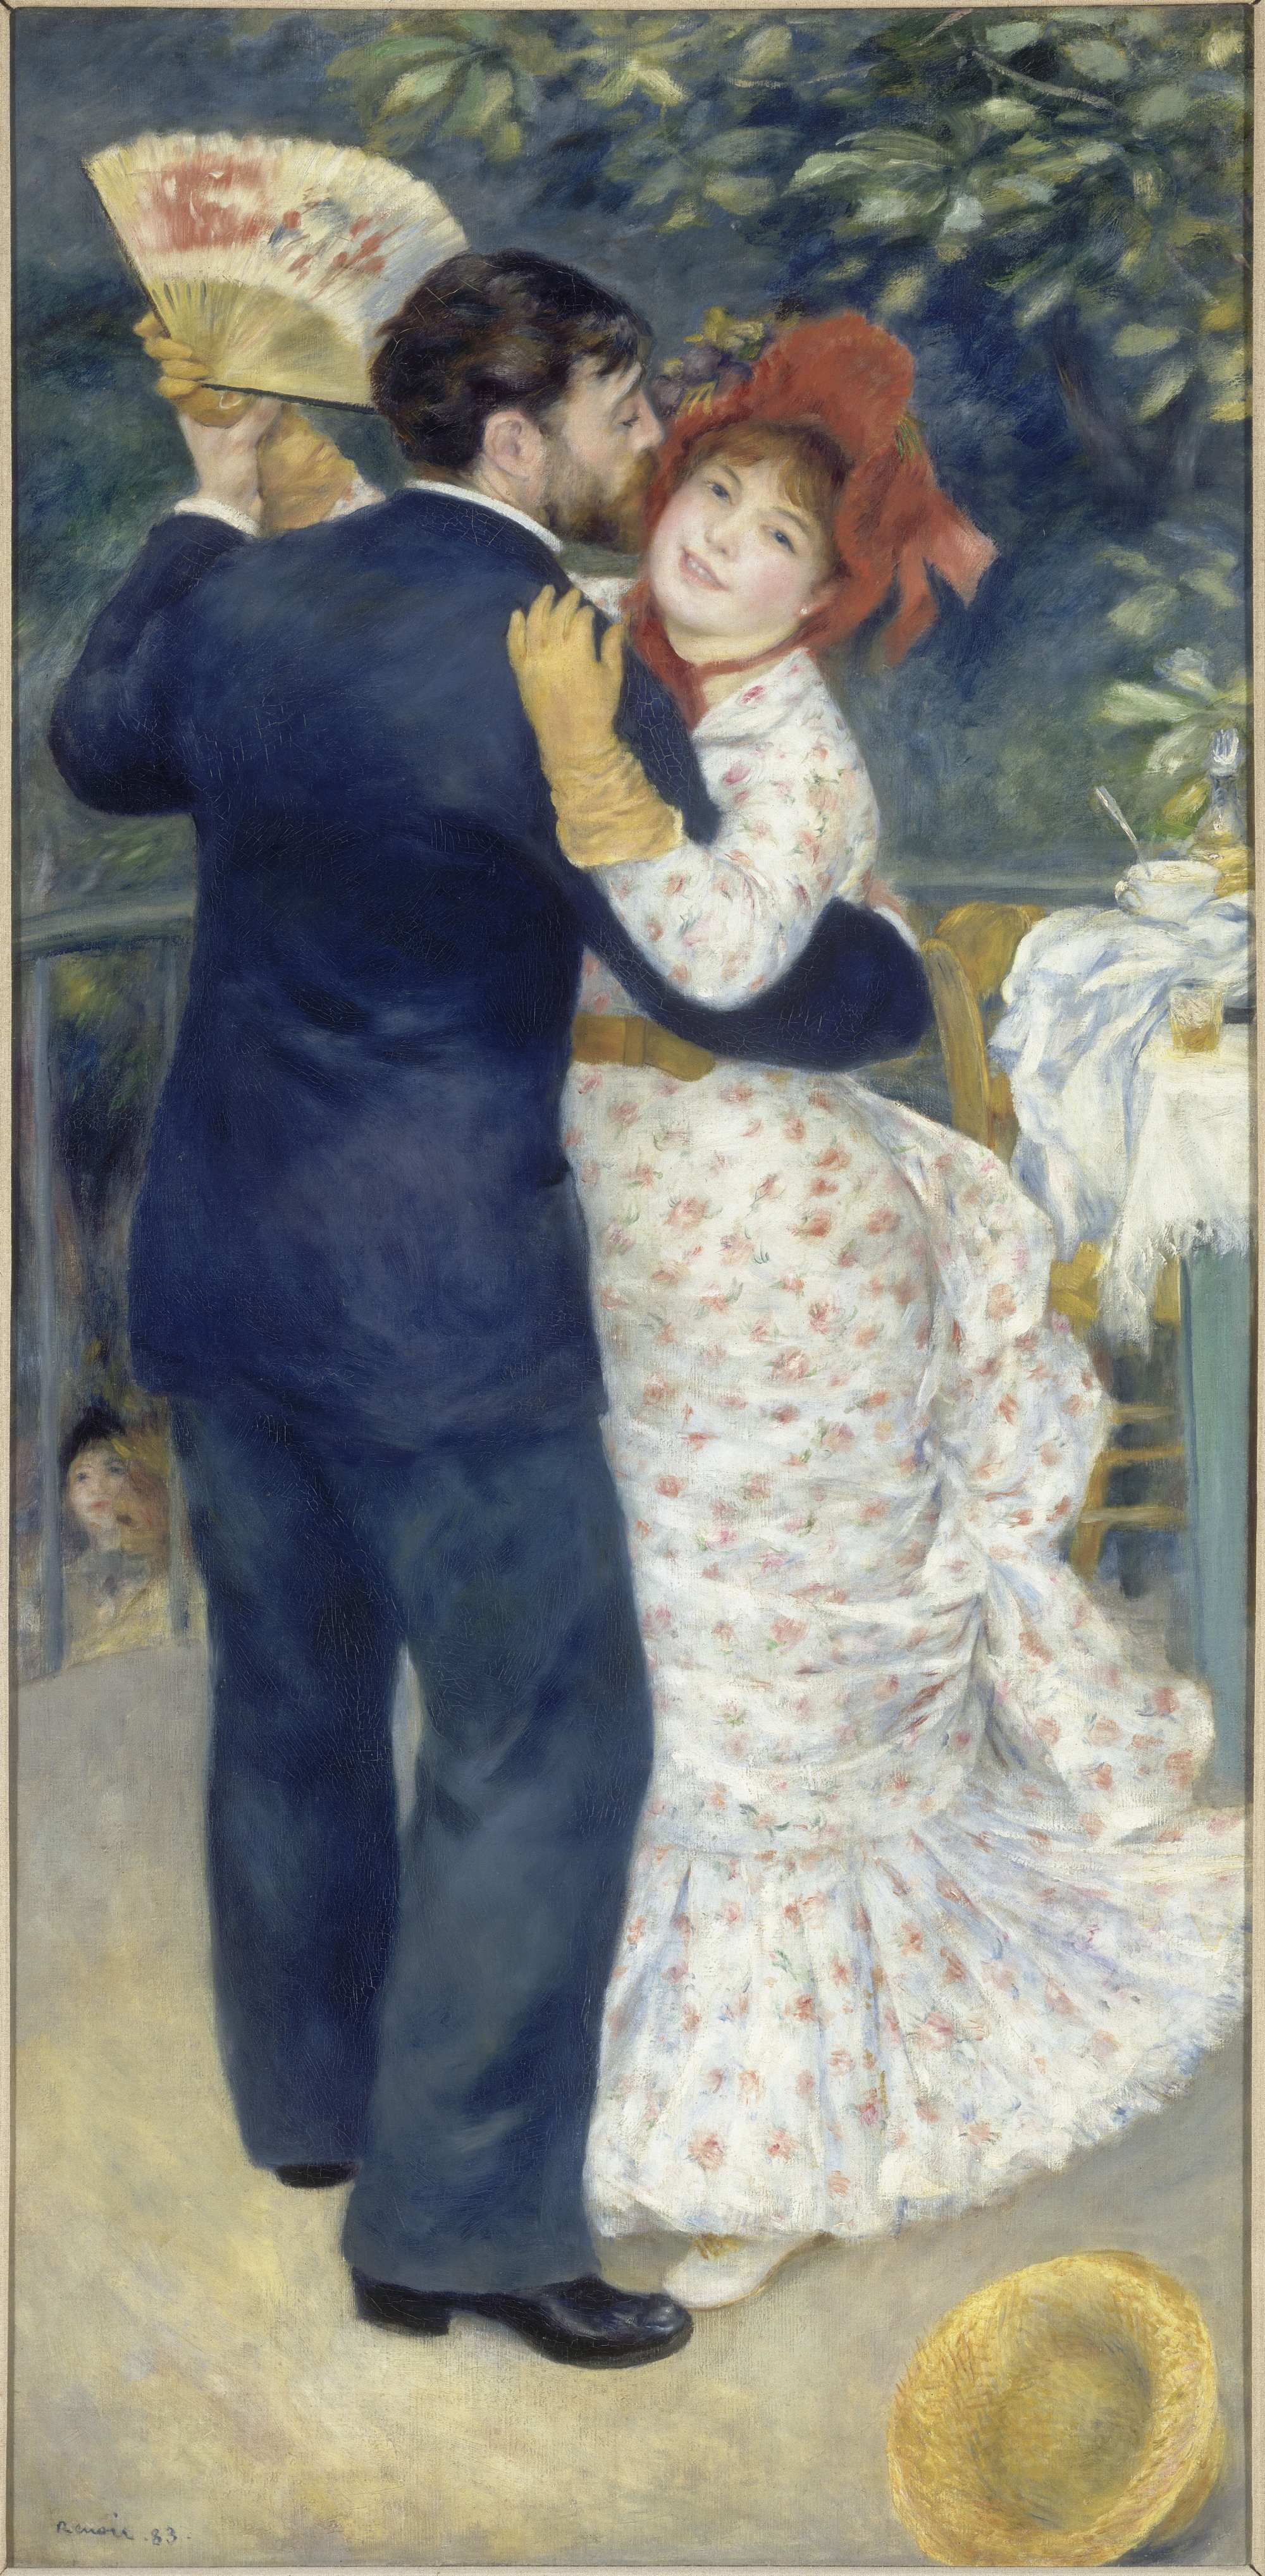 Danse à la campagne (Country Dance), Pierre Auguste Renoir